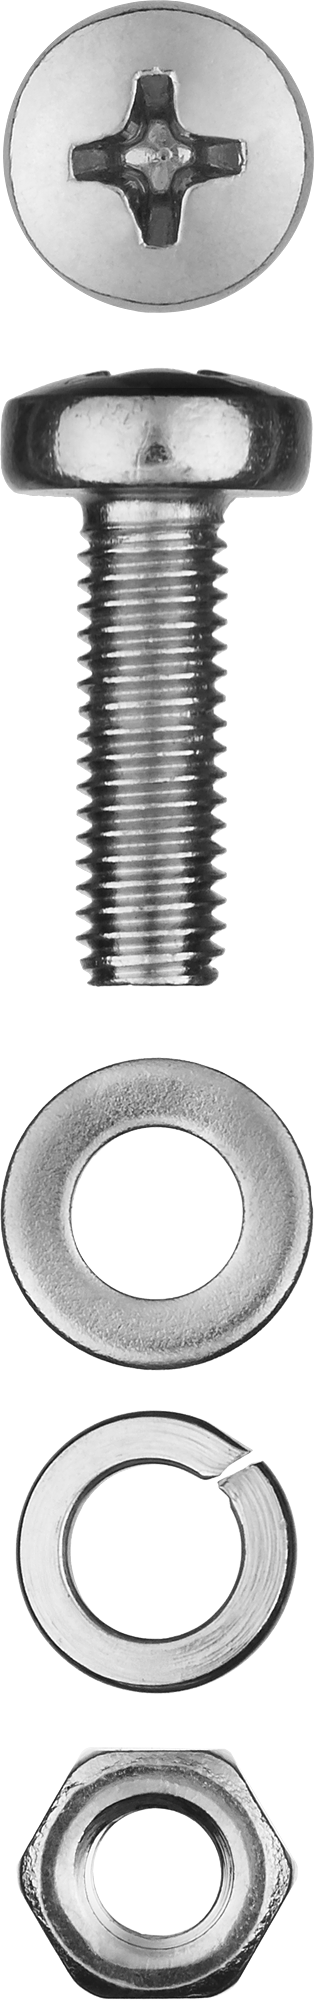 Винт (DIN7985) с полусферической головки в комплекте с гайкой (DIN934), шайбой (DIN125), шайбой пруж. (DIN127) Зубр 303476-04-016, М4, 1.6 см, 7985 DIN, 4 мм, оцинкованная сталь, 25 шт., фасовка (303476-04-016)